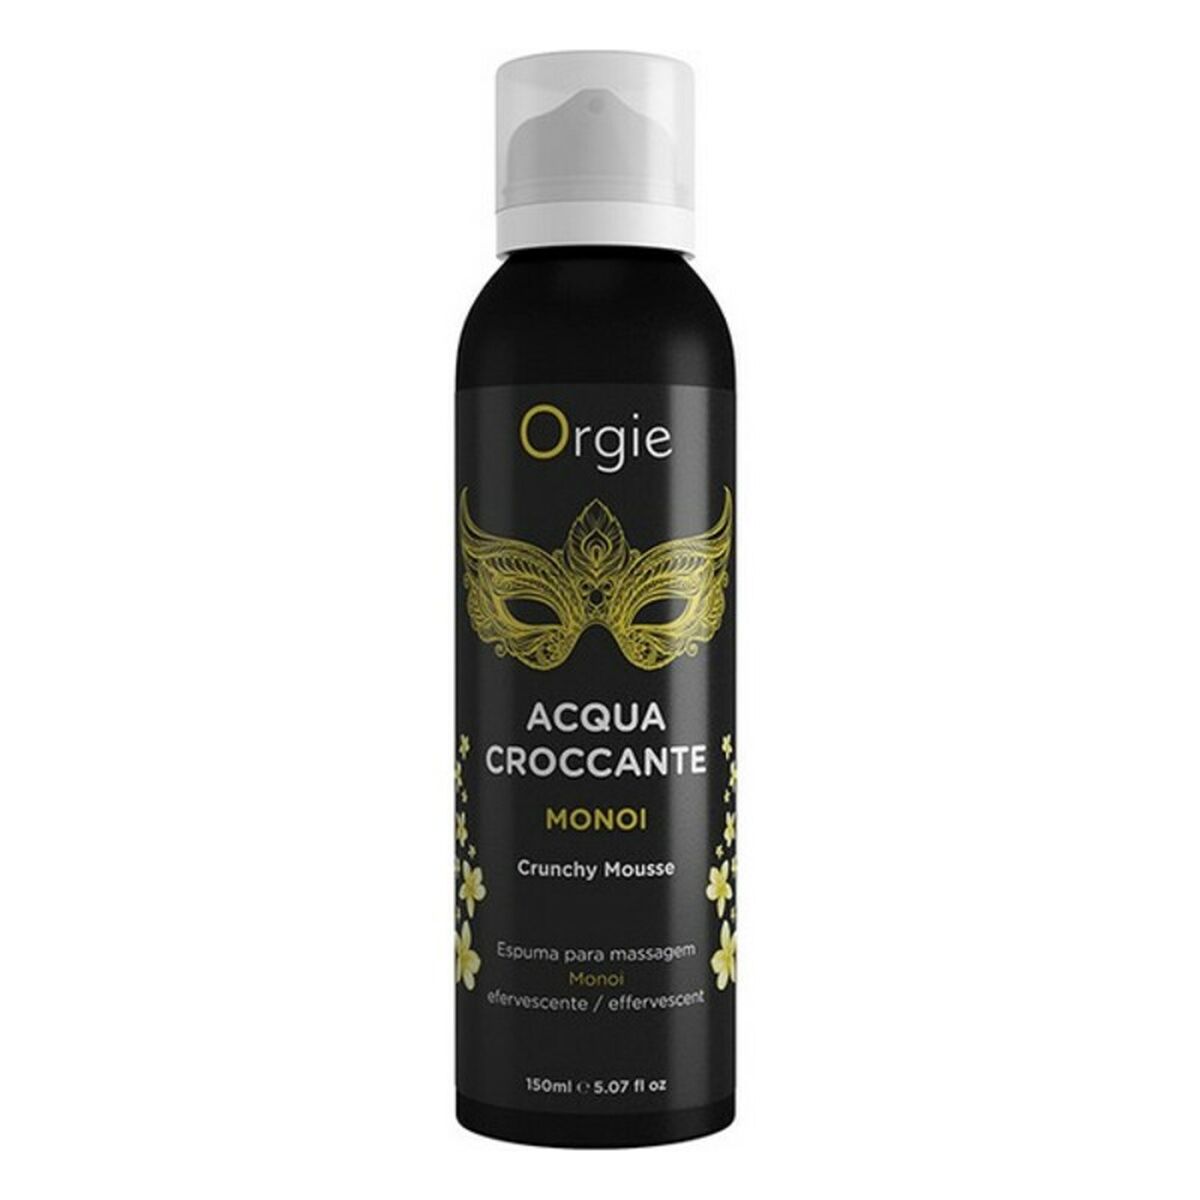 Osta tuote Kylpygeeli Acqua Croccante Orgie Monoi (100 ml) verkkokaupastamme Korhone: Seksikauppa & Erotiikka 20% alennuksella koodilla VIIKONLOPPU